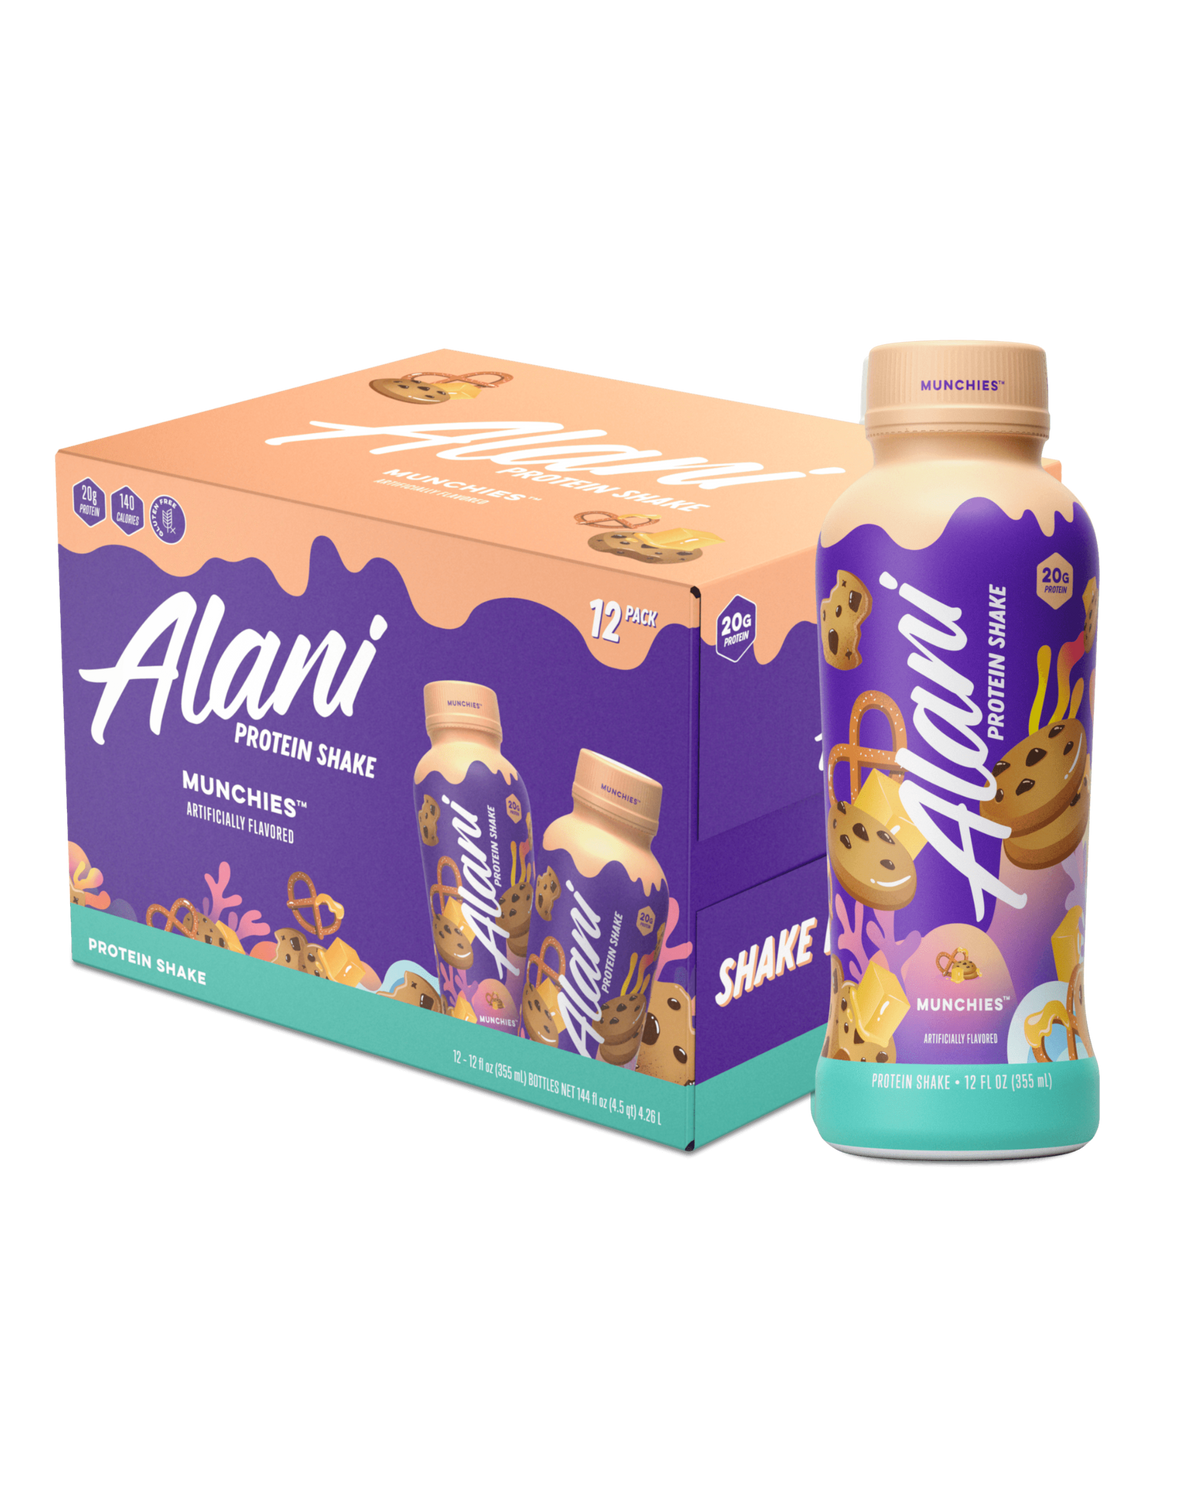 Alani Nu Protein Shake, Cookies & Cream - 12.0 fl oz